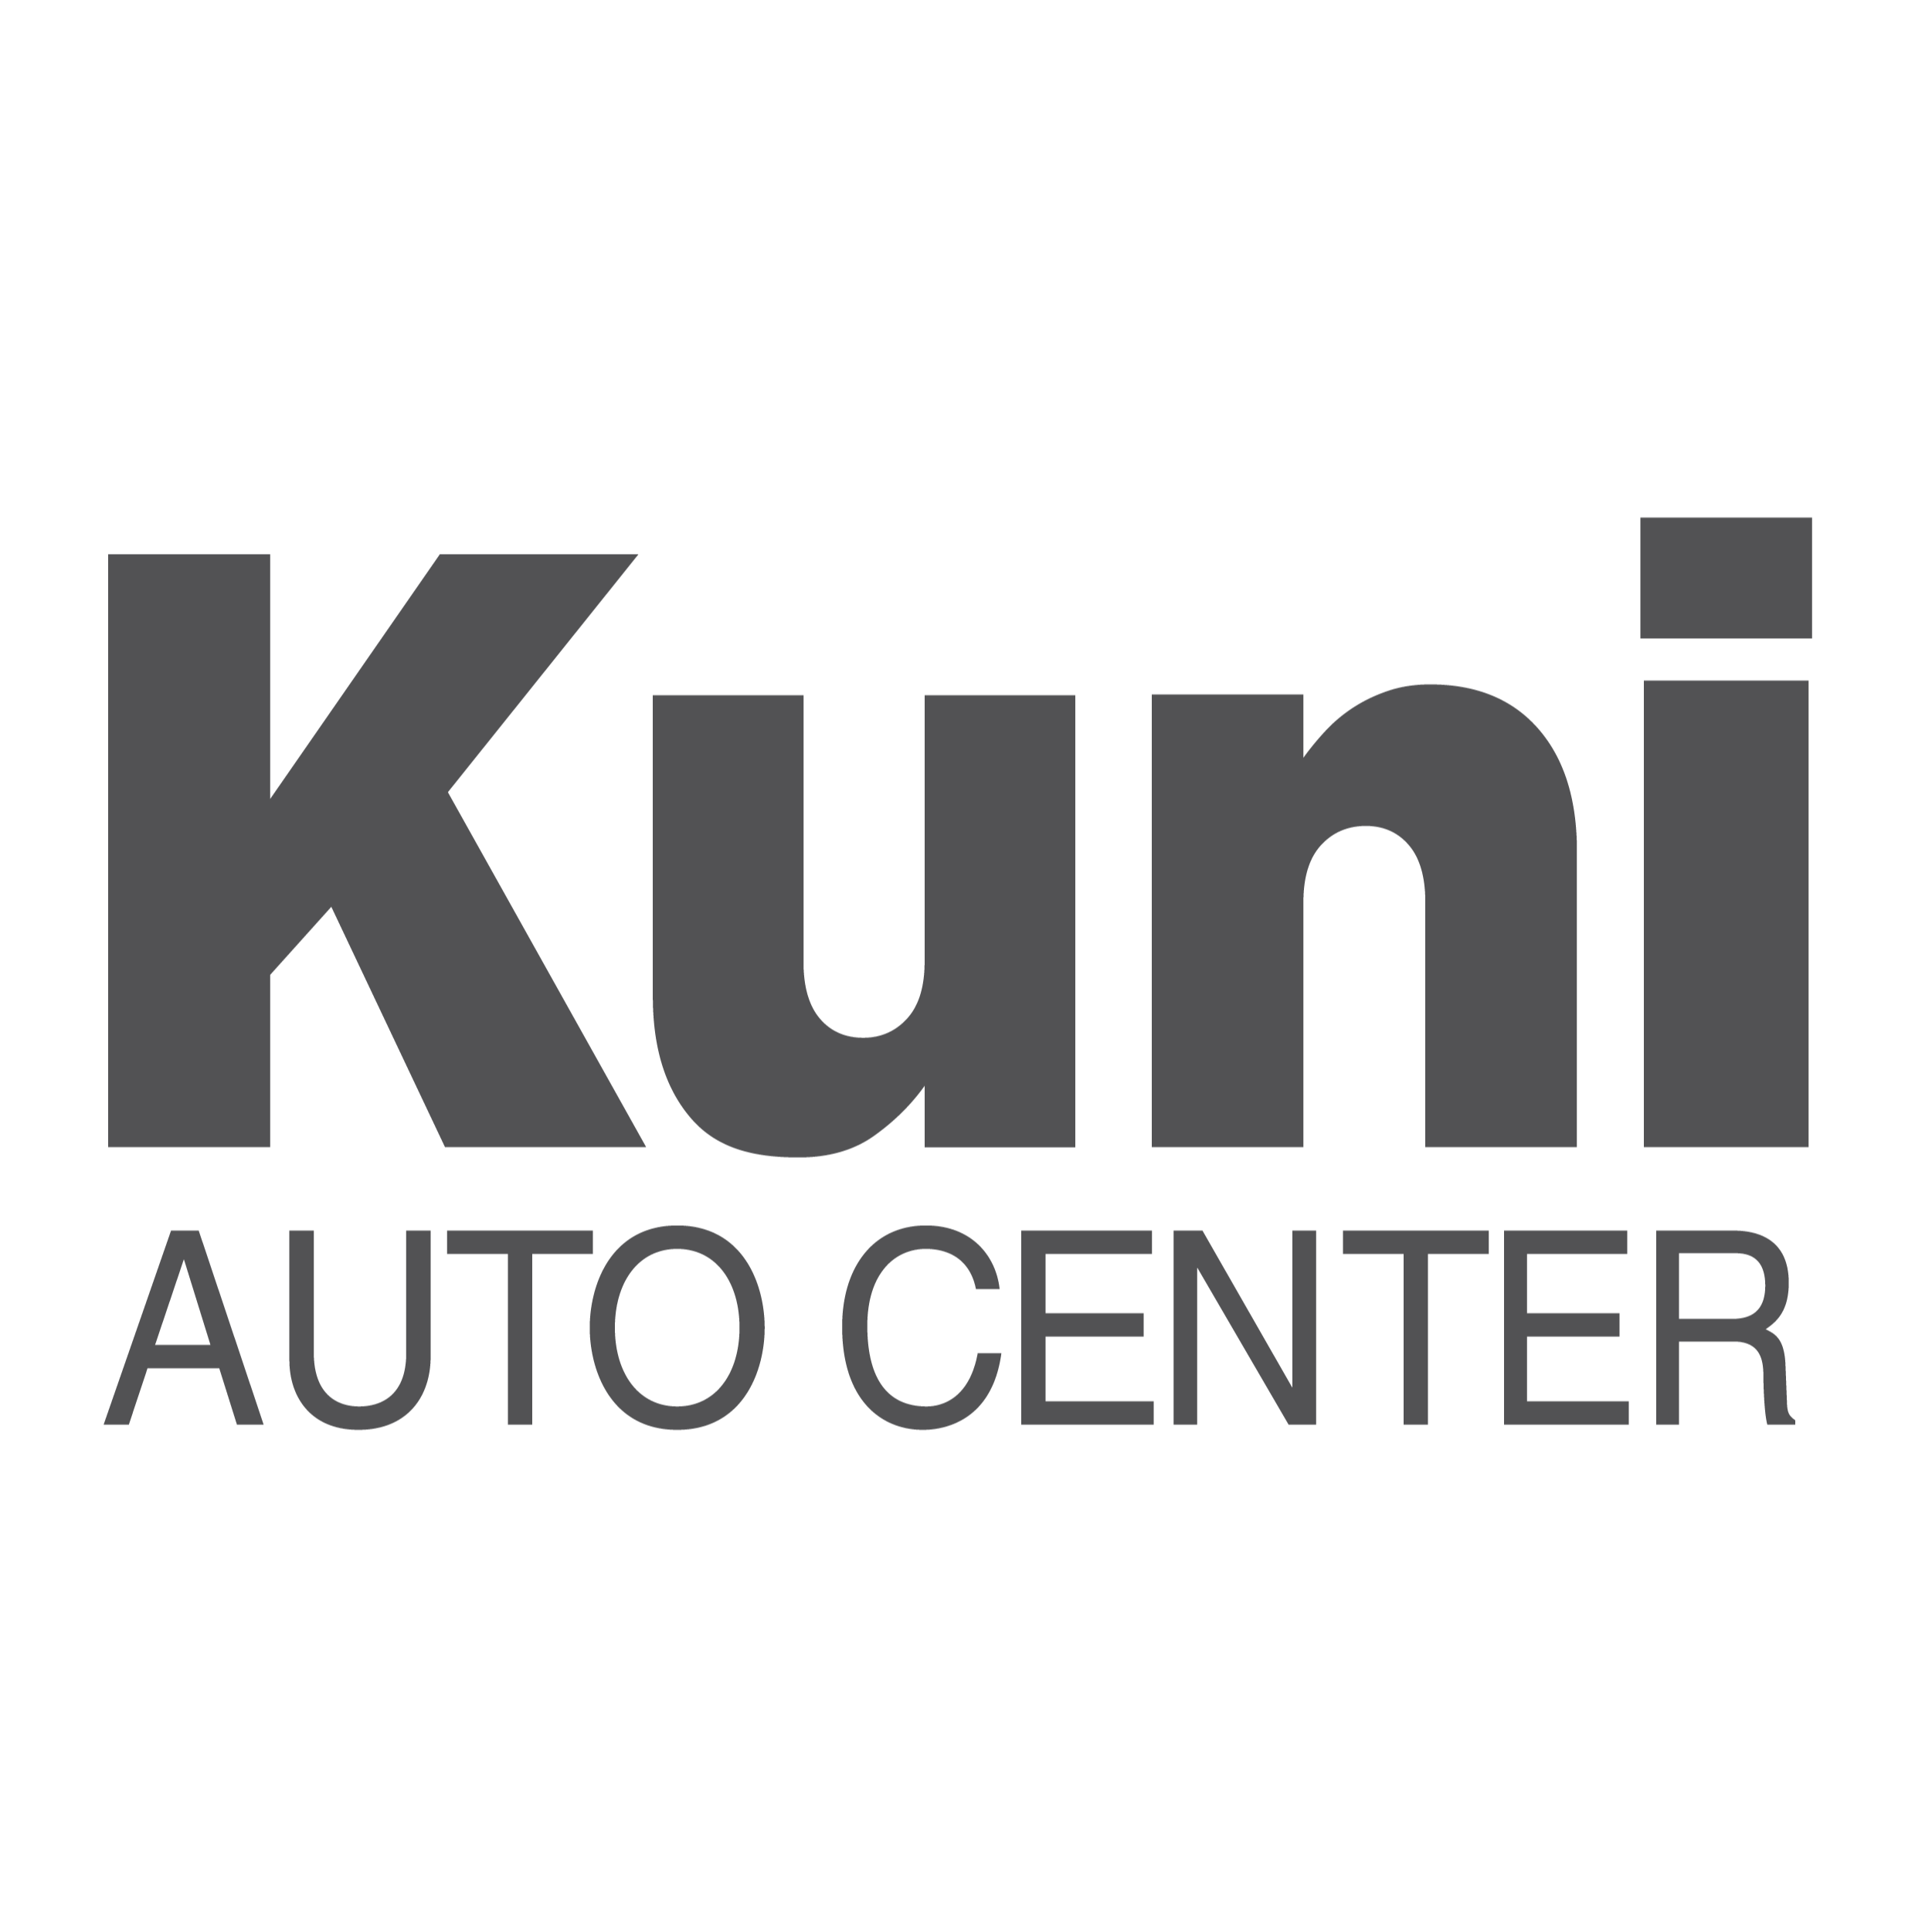 Kuni Auto Center